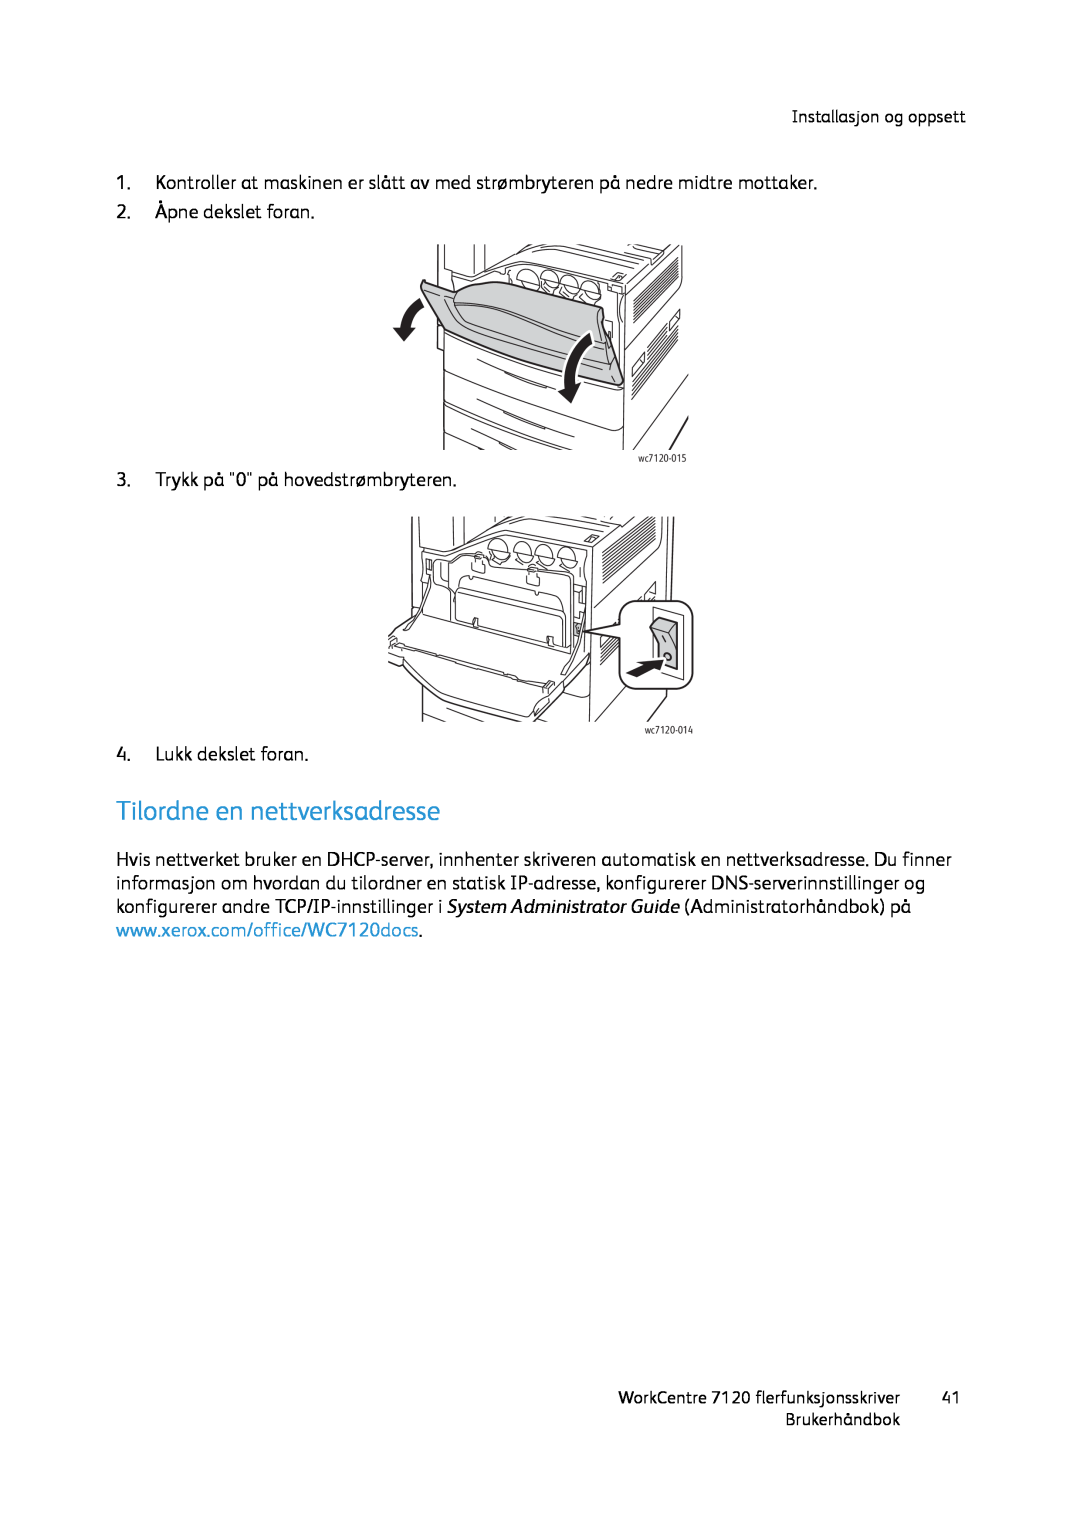 Xerox manual Tilordne en nettverksadresse, Installasjon og oppsett, Brukerhåndbok, wc7120-015, wc7120-014 